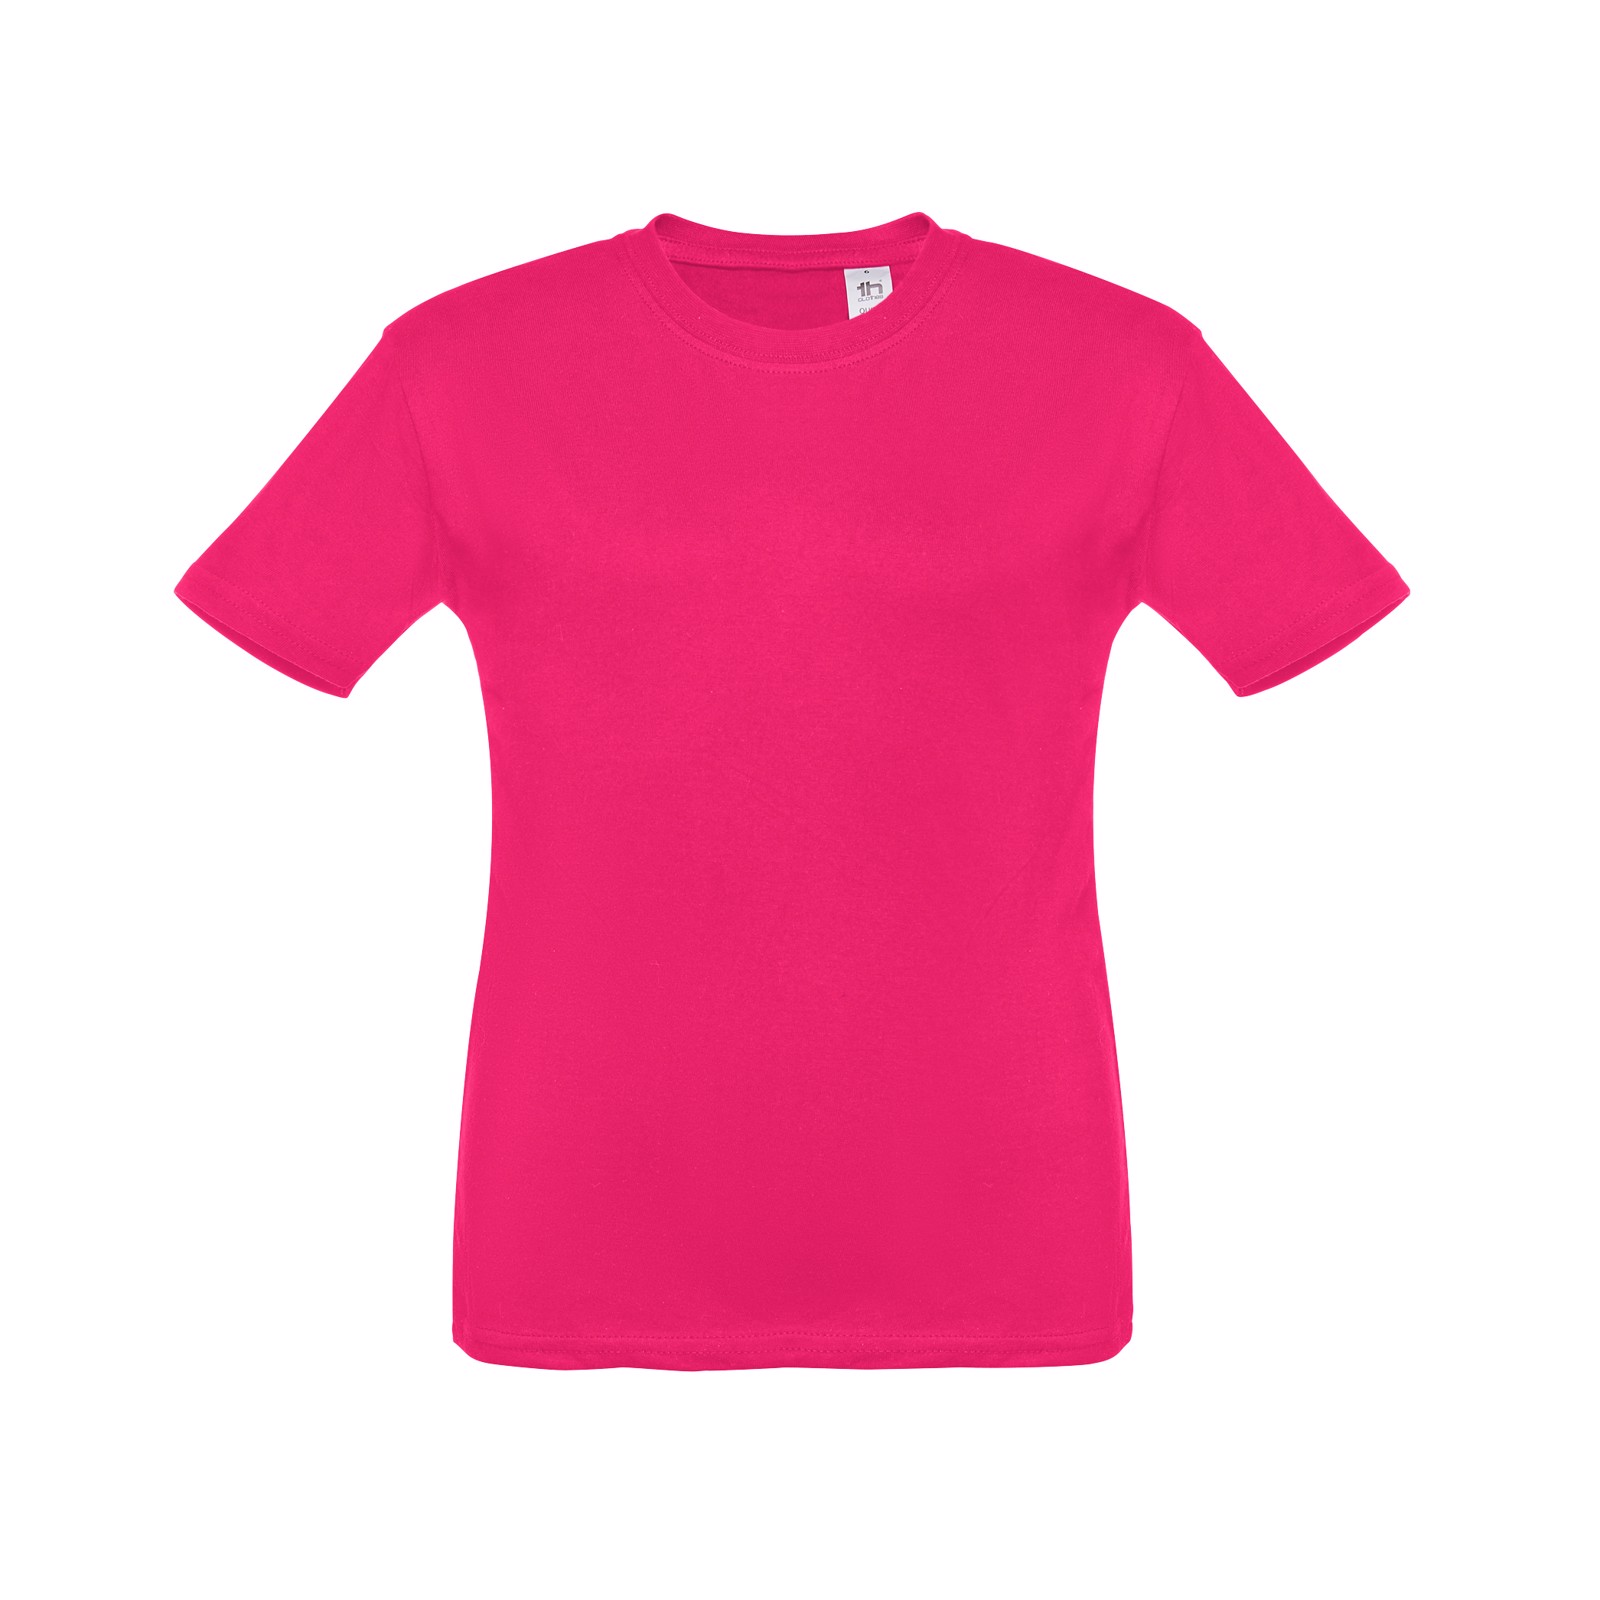 THC ANKARA KIDS. Children's t-shirt - Pink / 12